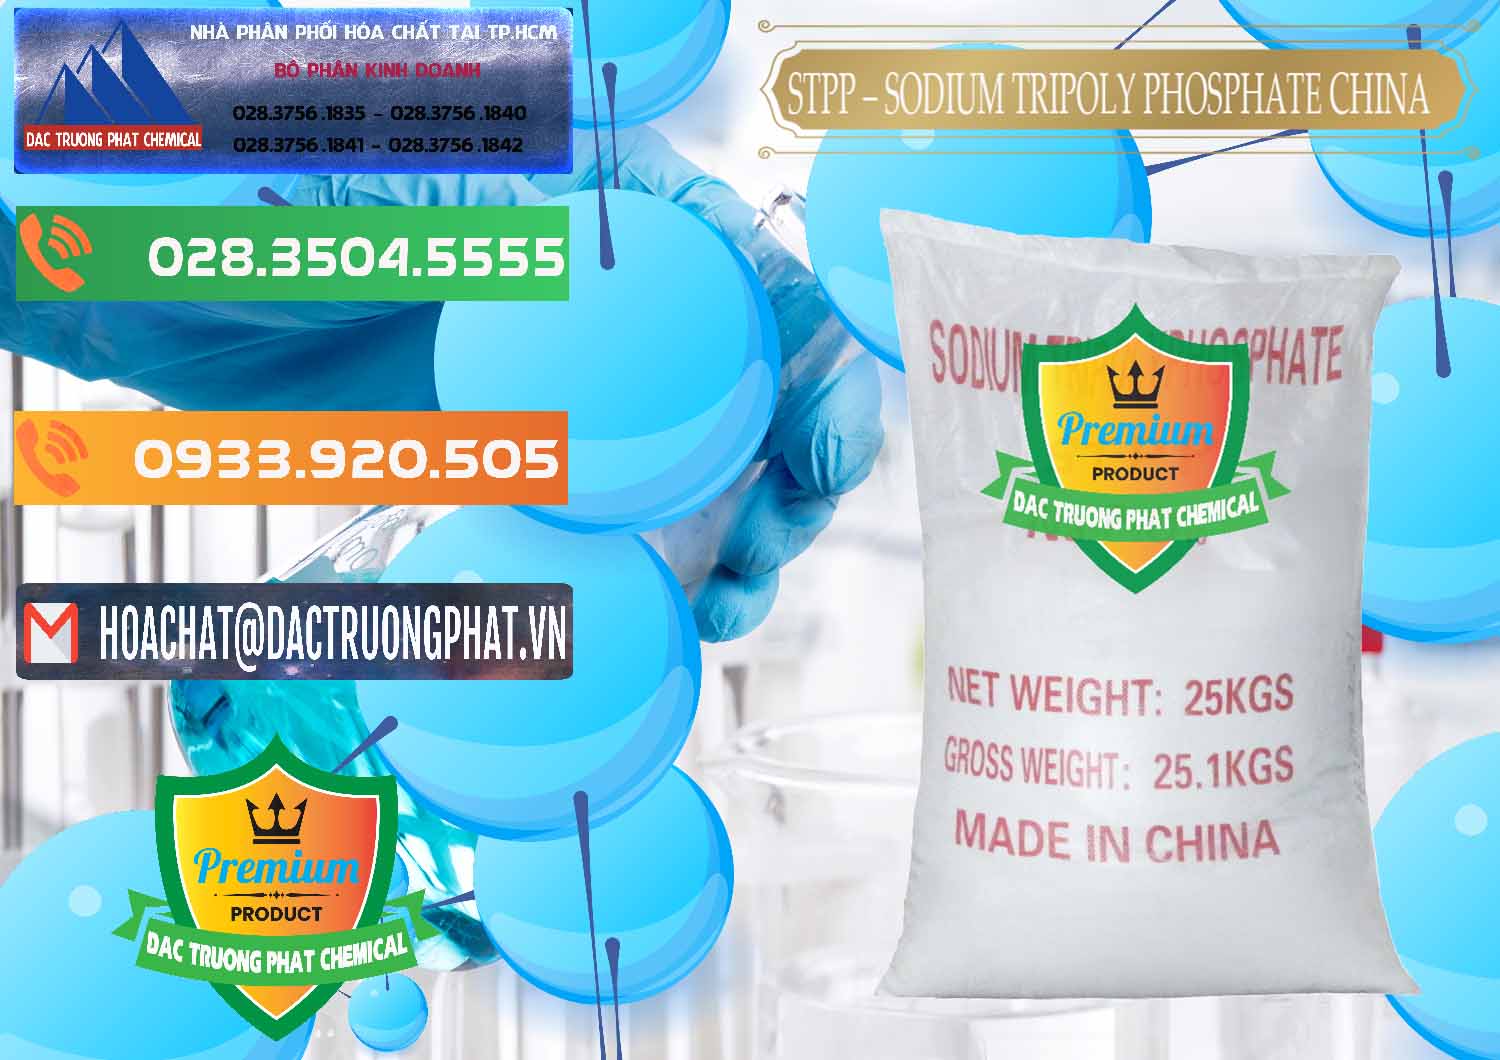 Đơn vị chuyên phân phối - bán Sodium Tripoly Phosphate - STPP 96% Chữ Đỏ Trung Quốc China - 0155 - Công ty chuyên cung ứng & phân phối hóa chất tại TP.HCM - hoachatxulynuoc.com.vn